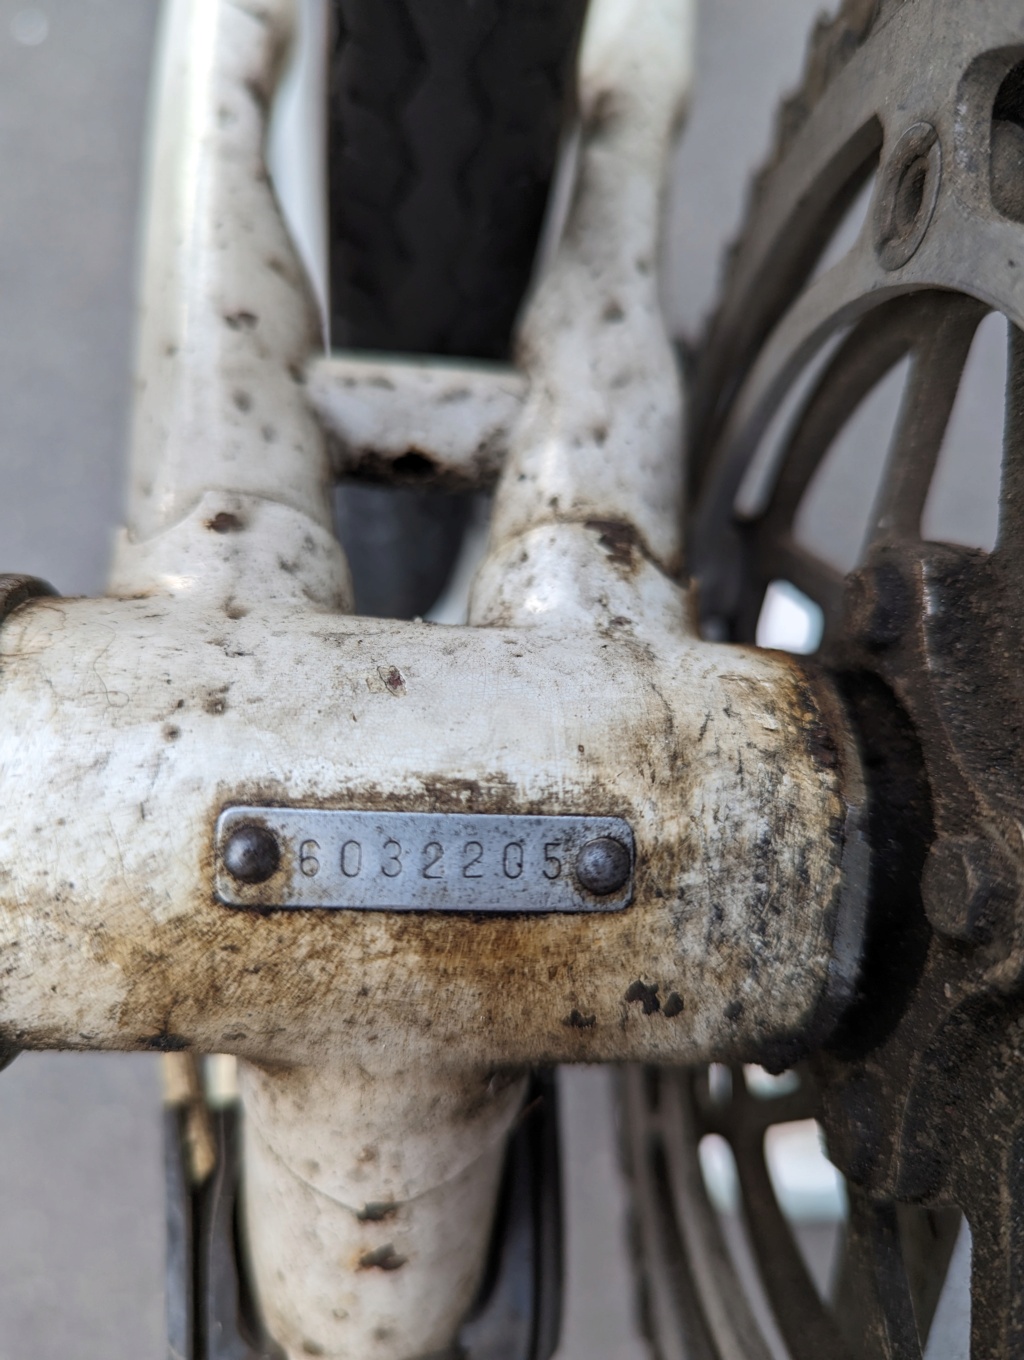 Identification vélo de course Peugeot 1977/1980 - 6032205  Pxl_2015